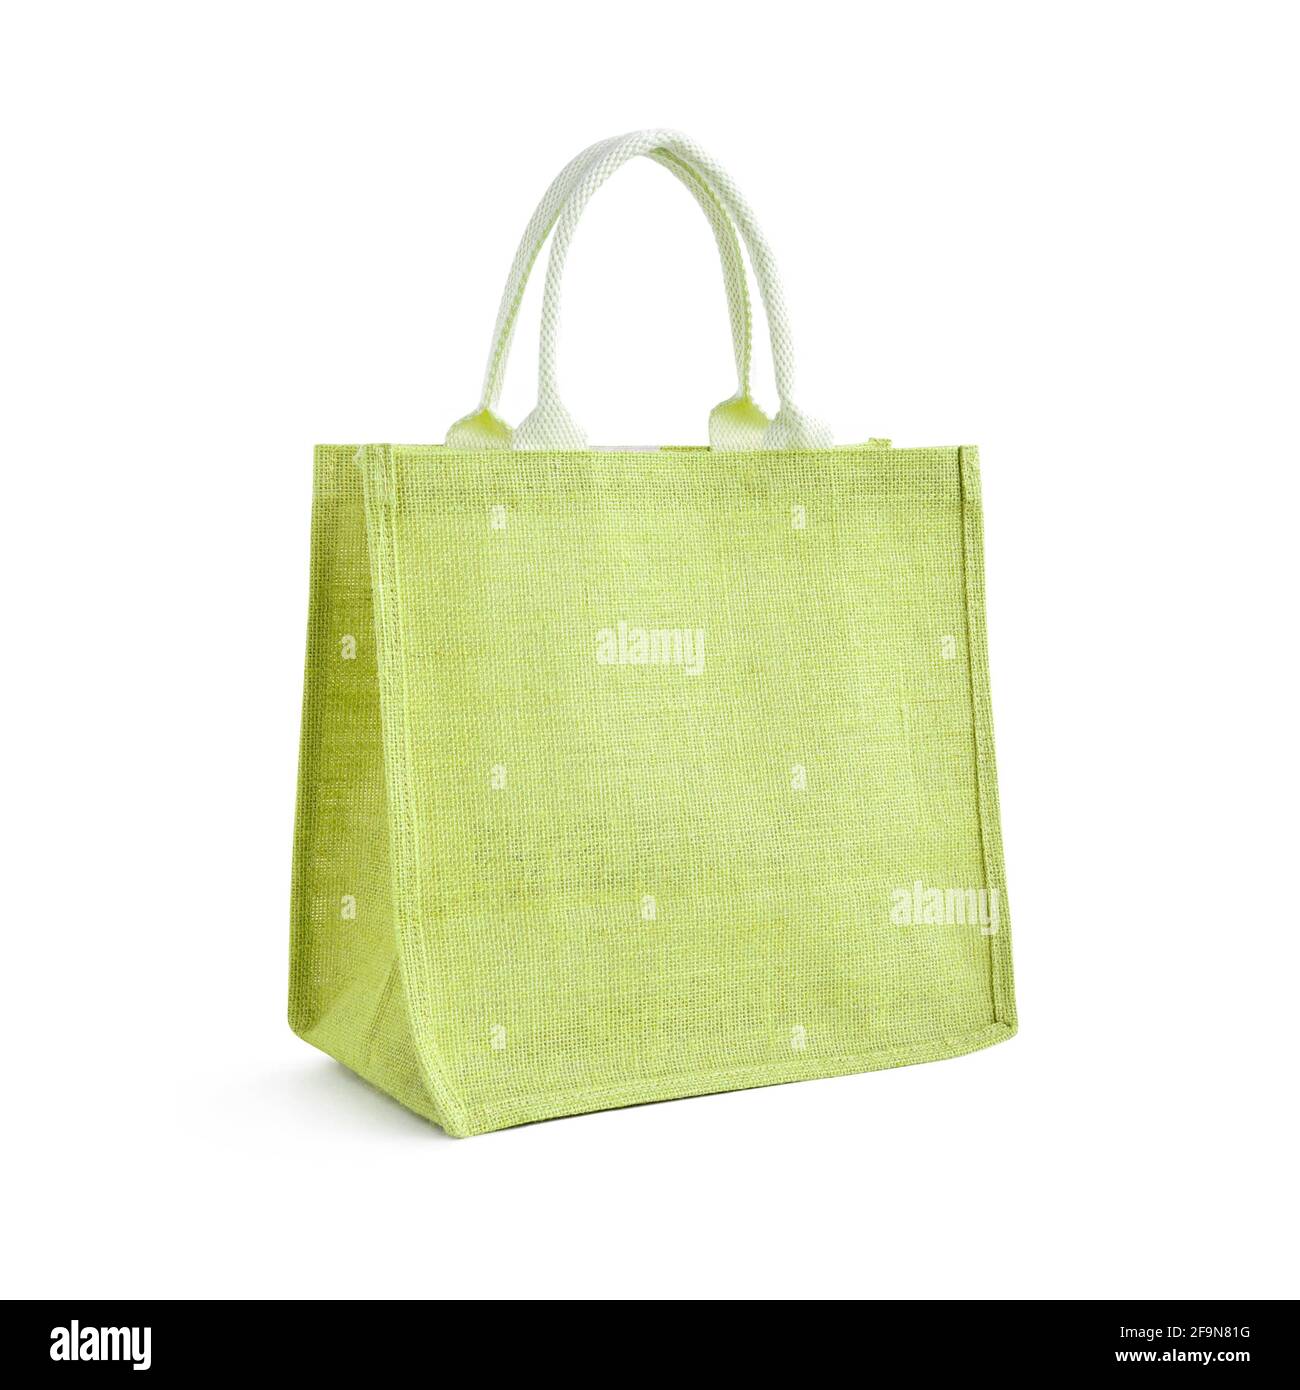 Hessischer oder Jute Bag - wiederverwendbarer grüner Einkaufstasche mit Schlaufengriffe - isoliert Stockfoto